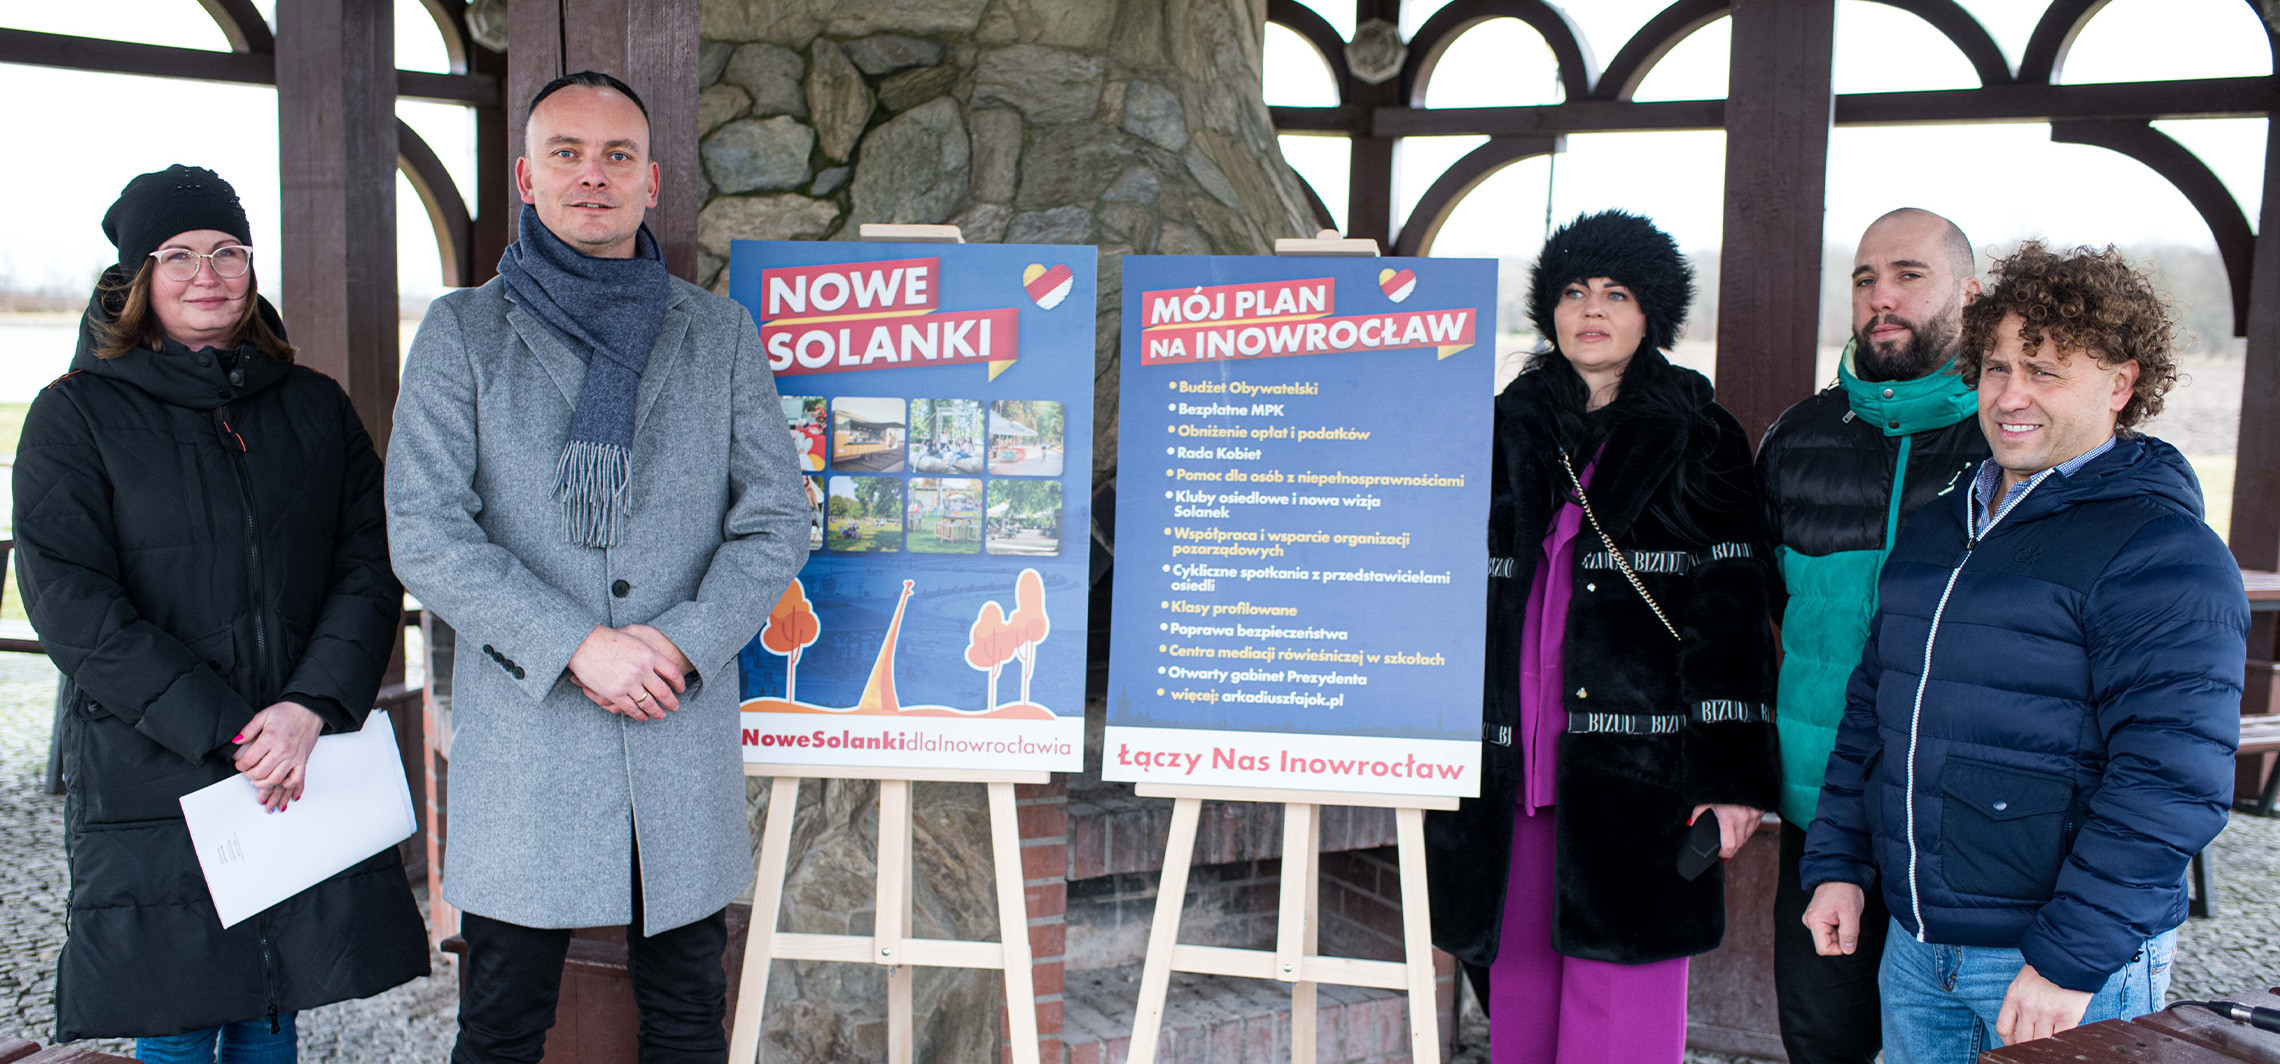 Inowrocław - Taki pomysł na nowe Solanki ma kandydat na prezydenta